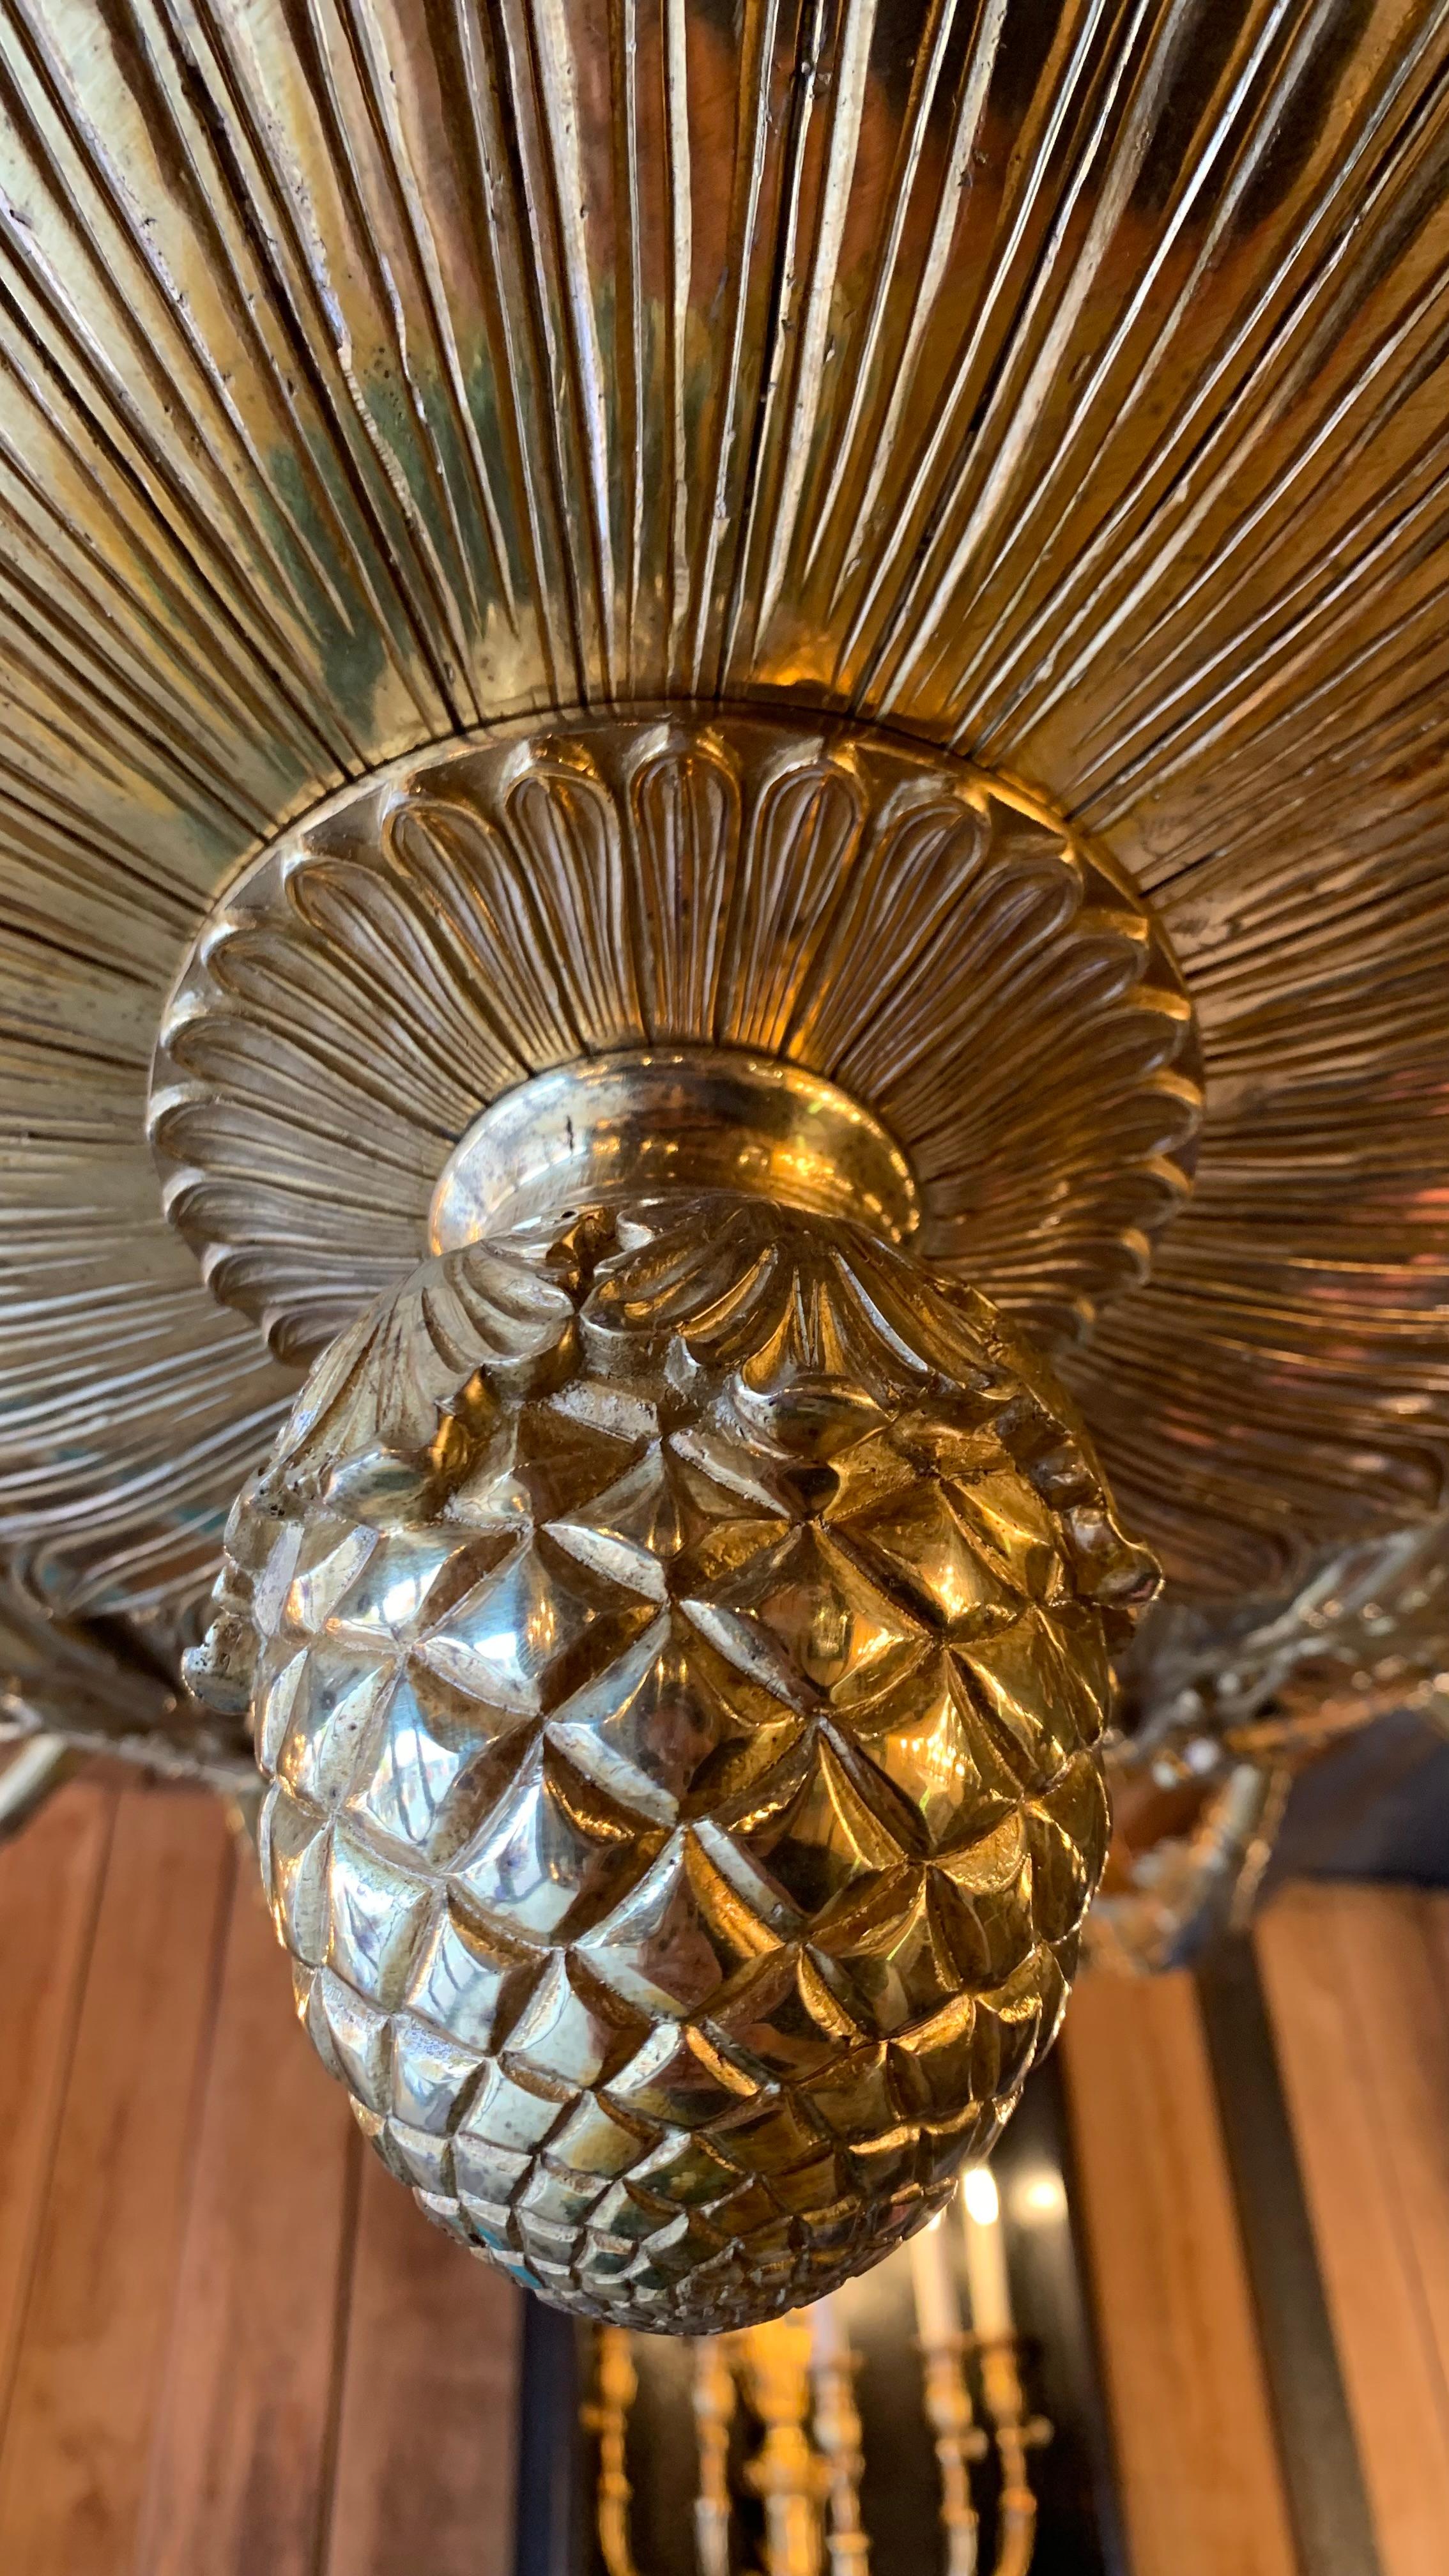 Dieser Kronleuchter ist eine Kopie eines Modells aus der Eremitage in St. Petersburg, aus Bronze mit einer Oberfläche aus 18 Karat satiniertem Gold.
Die große Anzahl von Lichtern und die Feinheit der gemeißelten Ornamente machen ihn zu einem